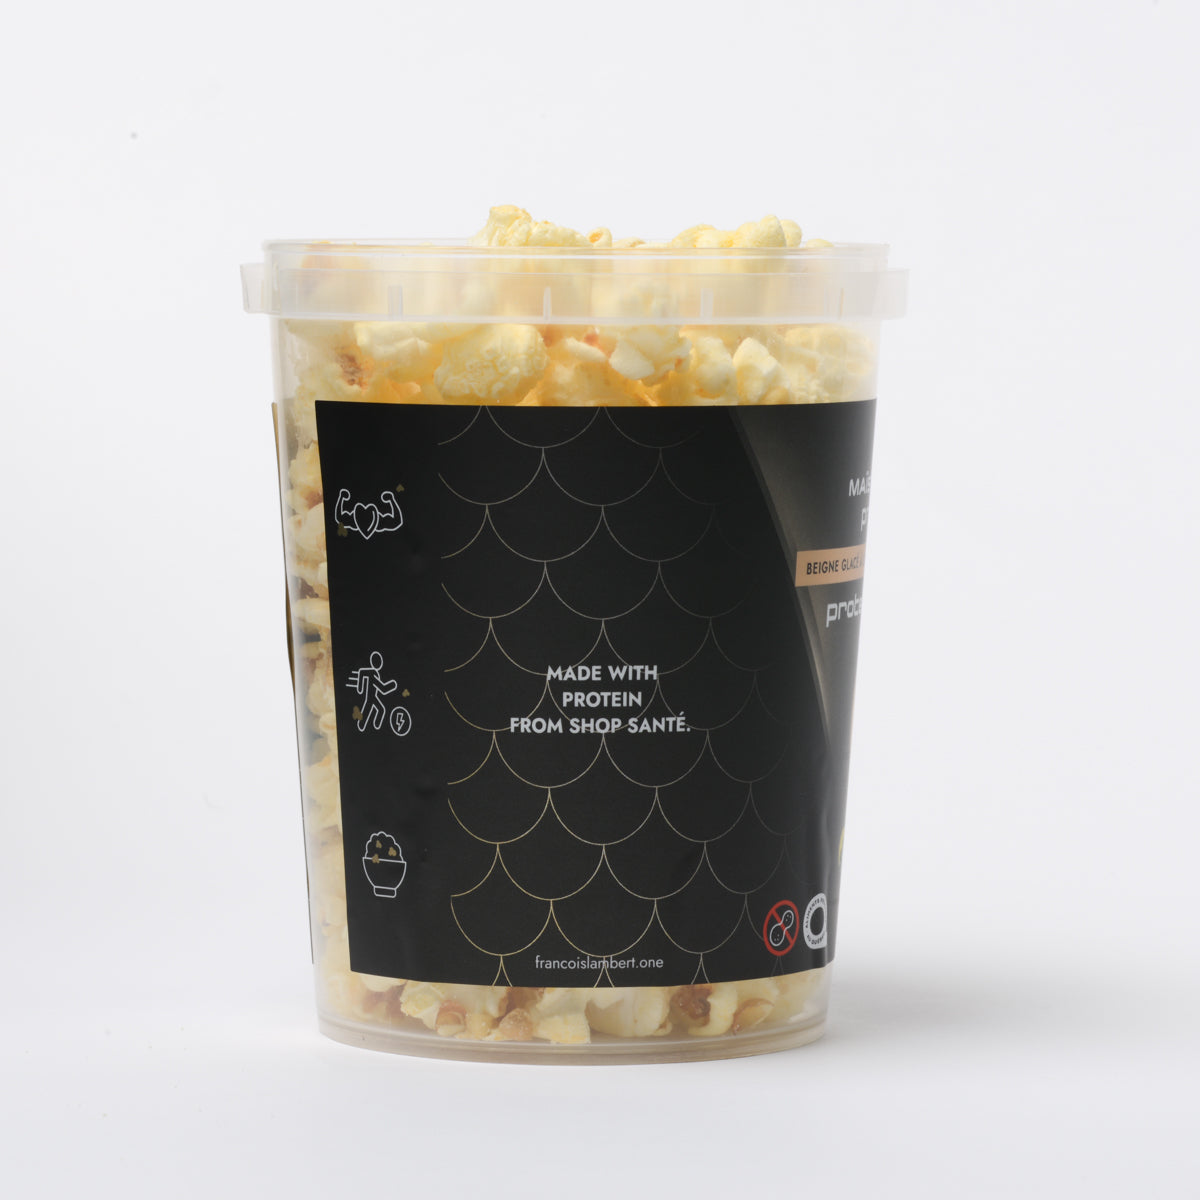 popcorn protéiné au beigne glacé à l'érable